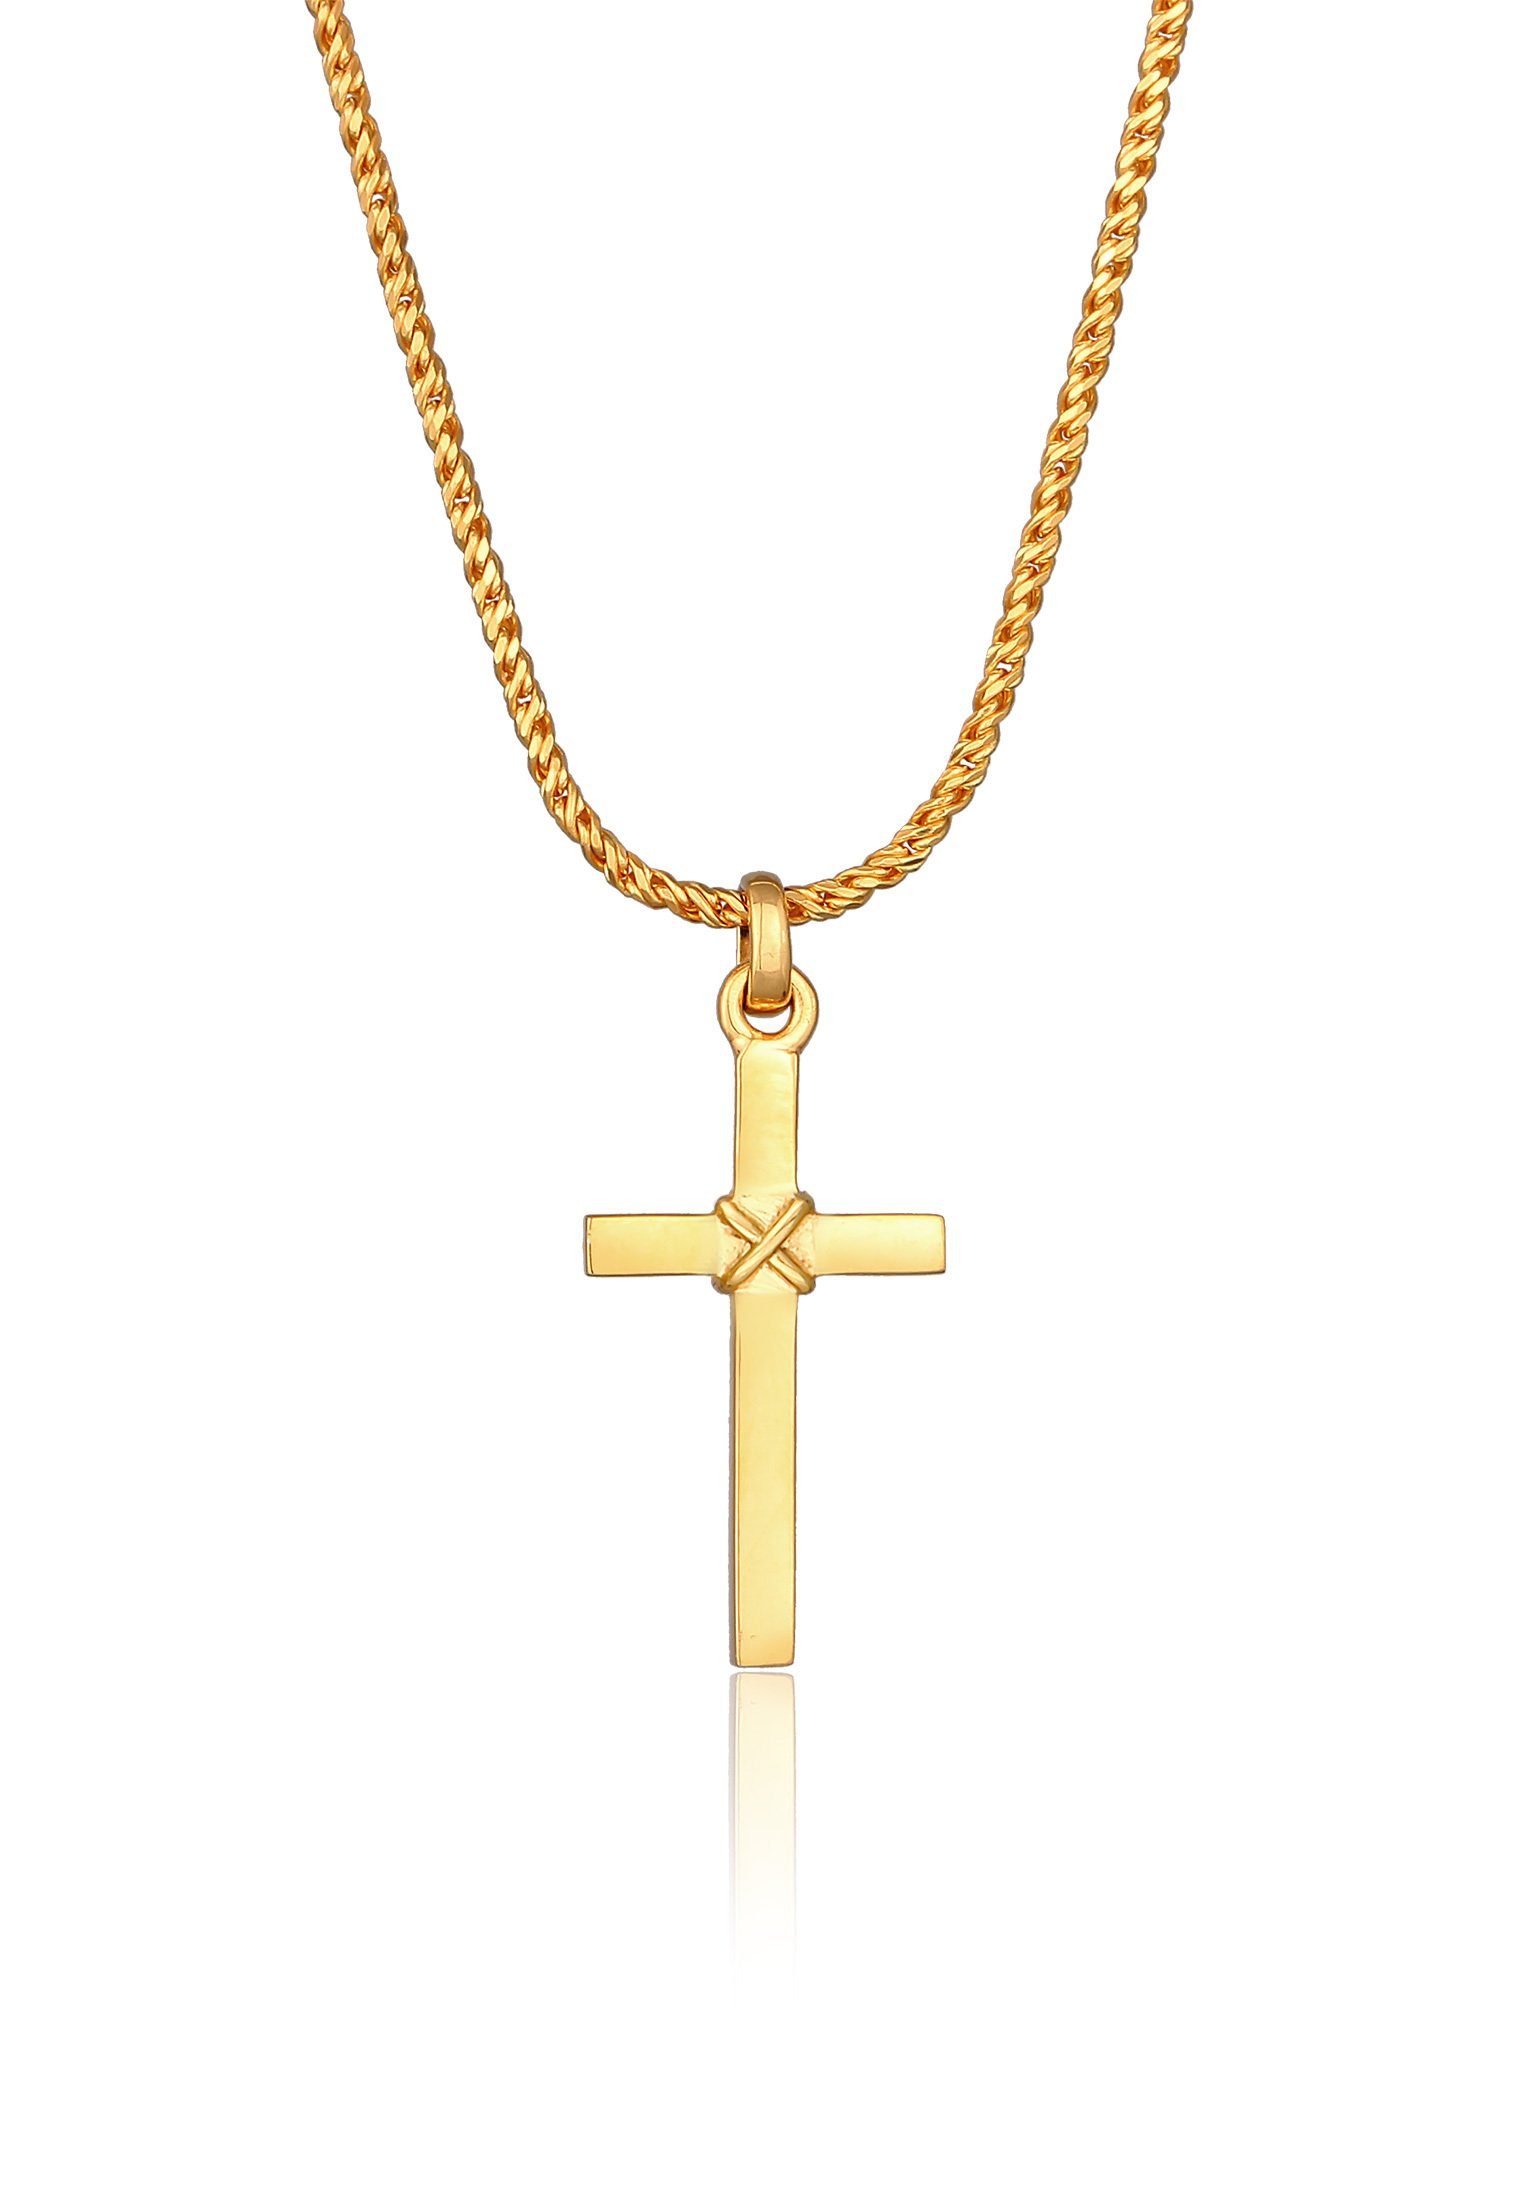 Kuzzoi Kette mit Anhänger Herren Kreuz Flach Kordelkette 925 Silber, Kreuz Gold